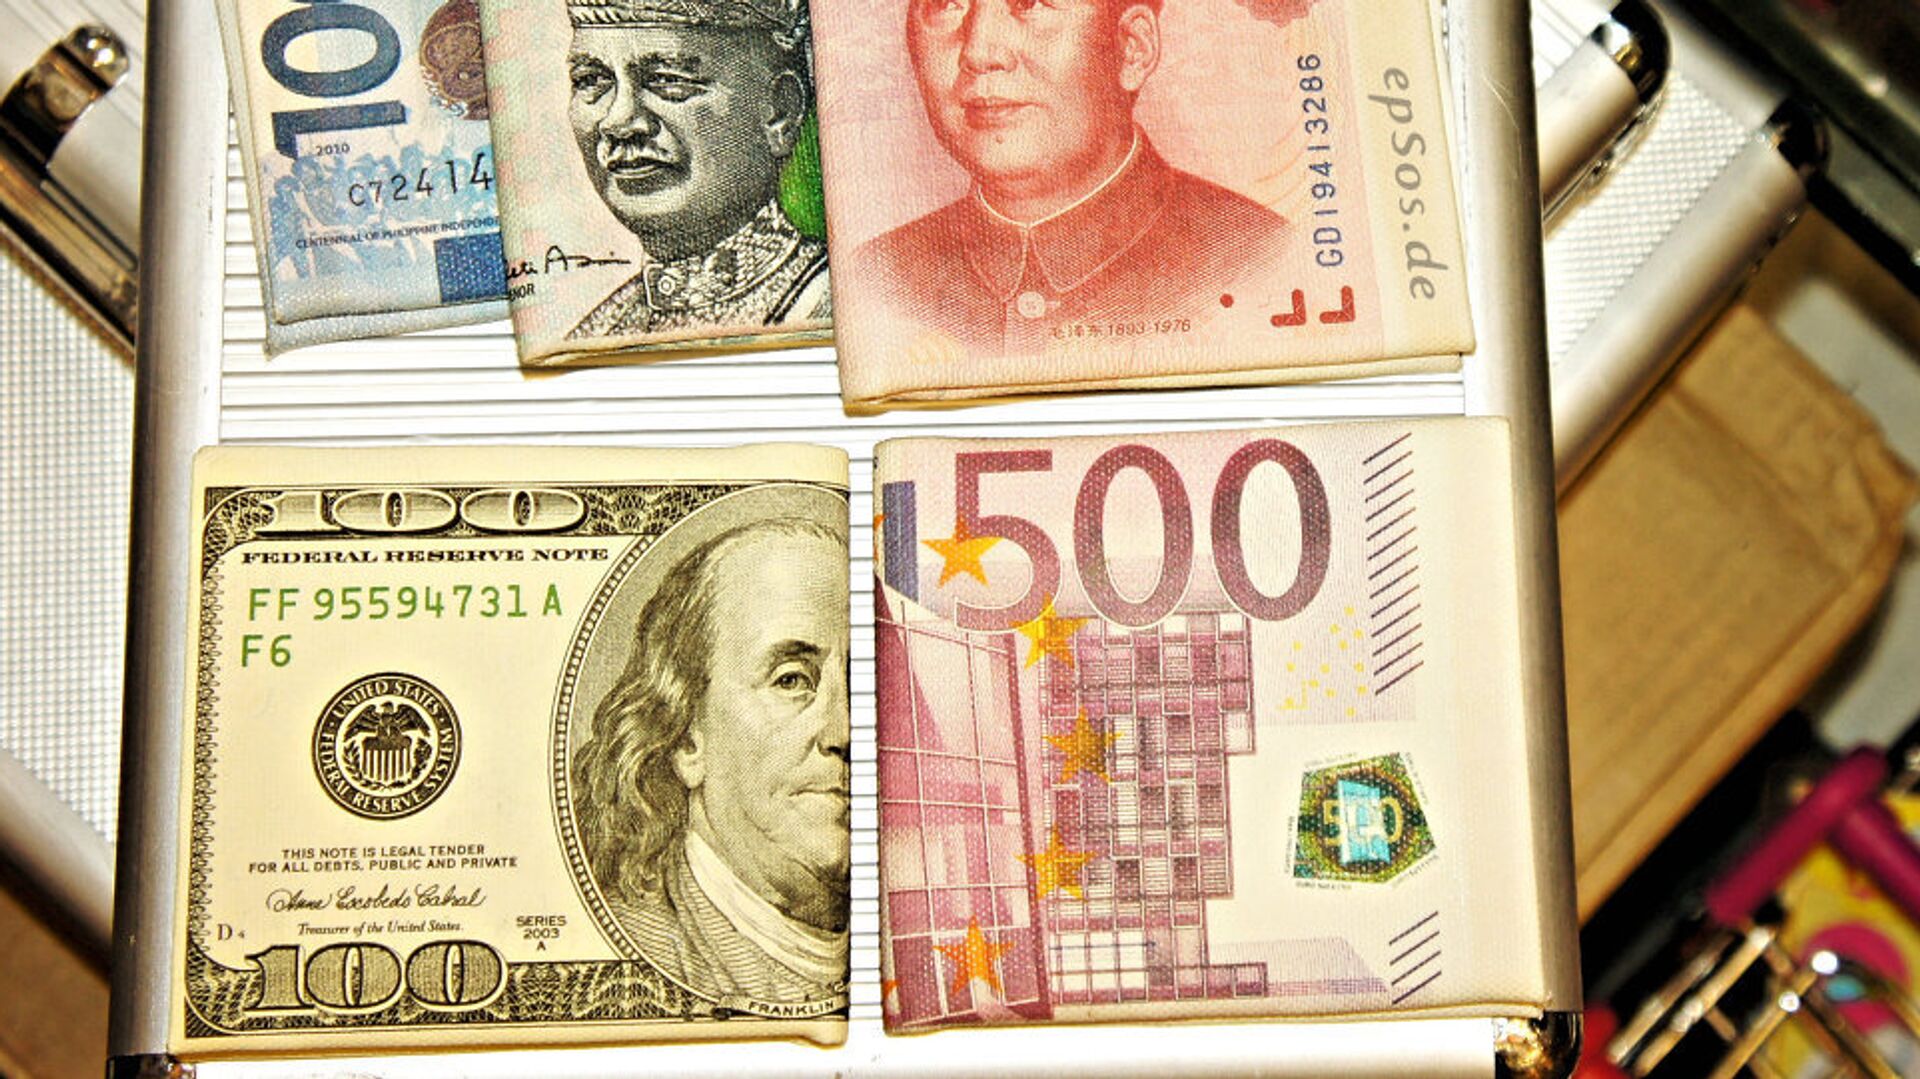 Кинески јуан, евро, амерички долар и друге валуте - Sputnik Србија, 1920, 08.05.2021